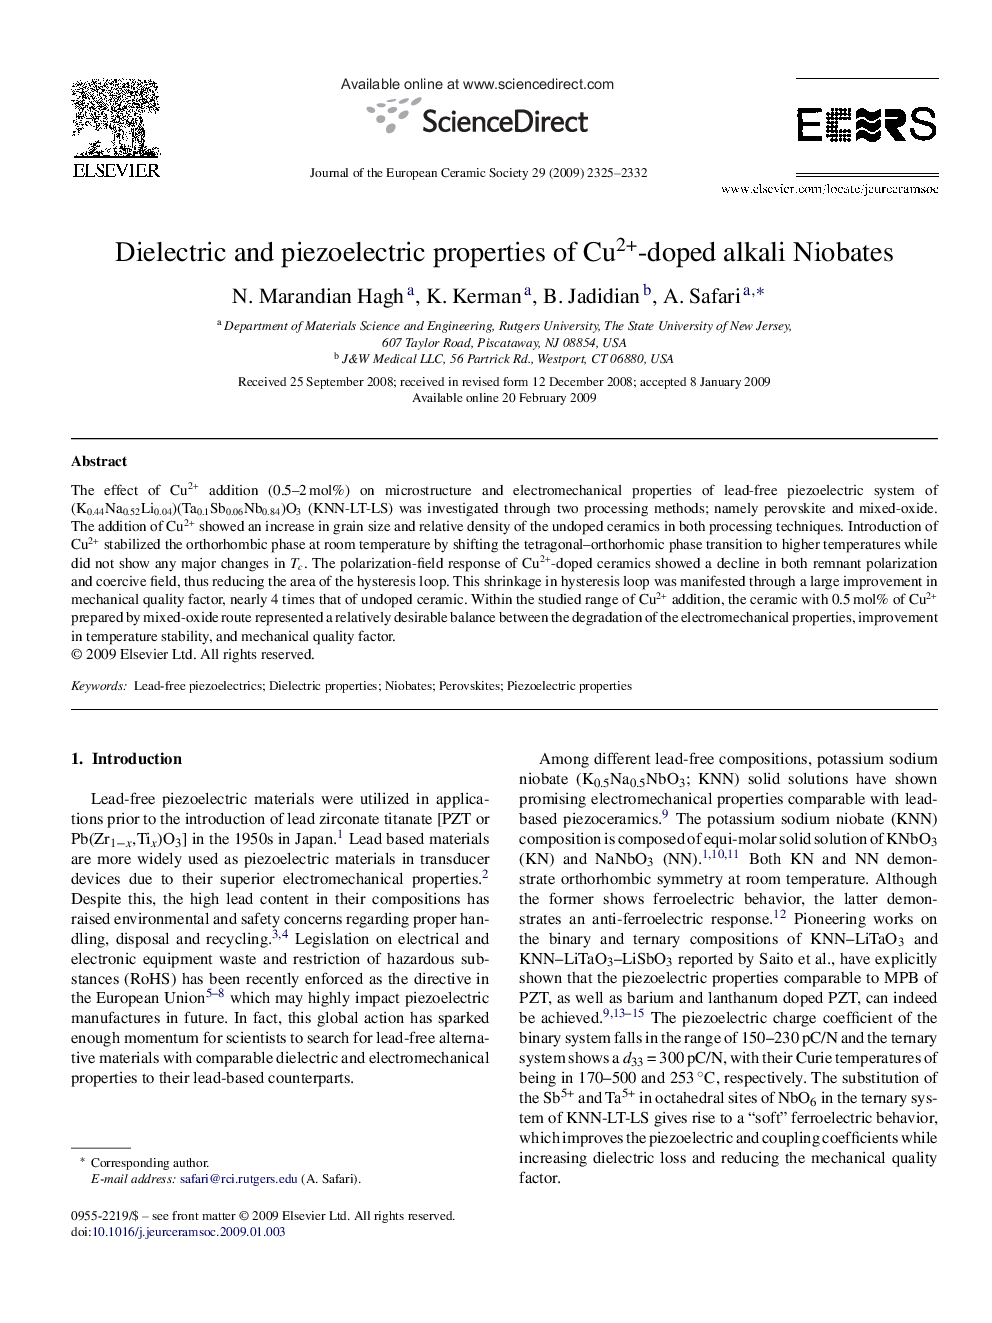 Dielectric and piezoelectric properties of Cu2+-doped alkali Niobates